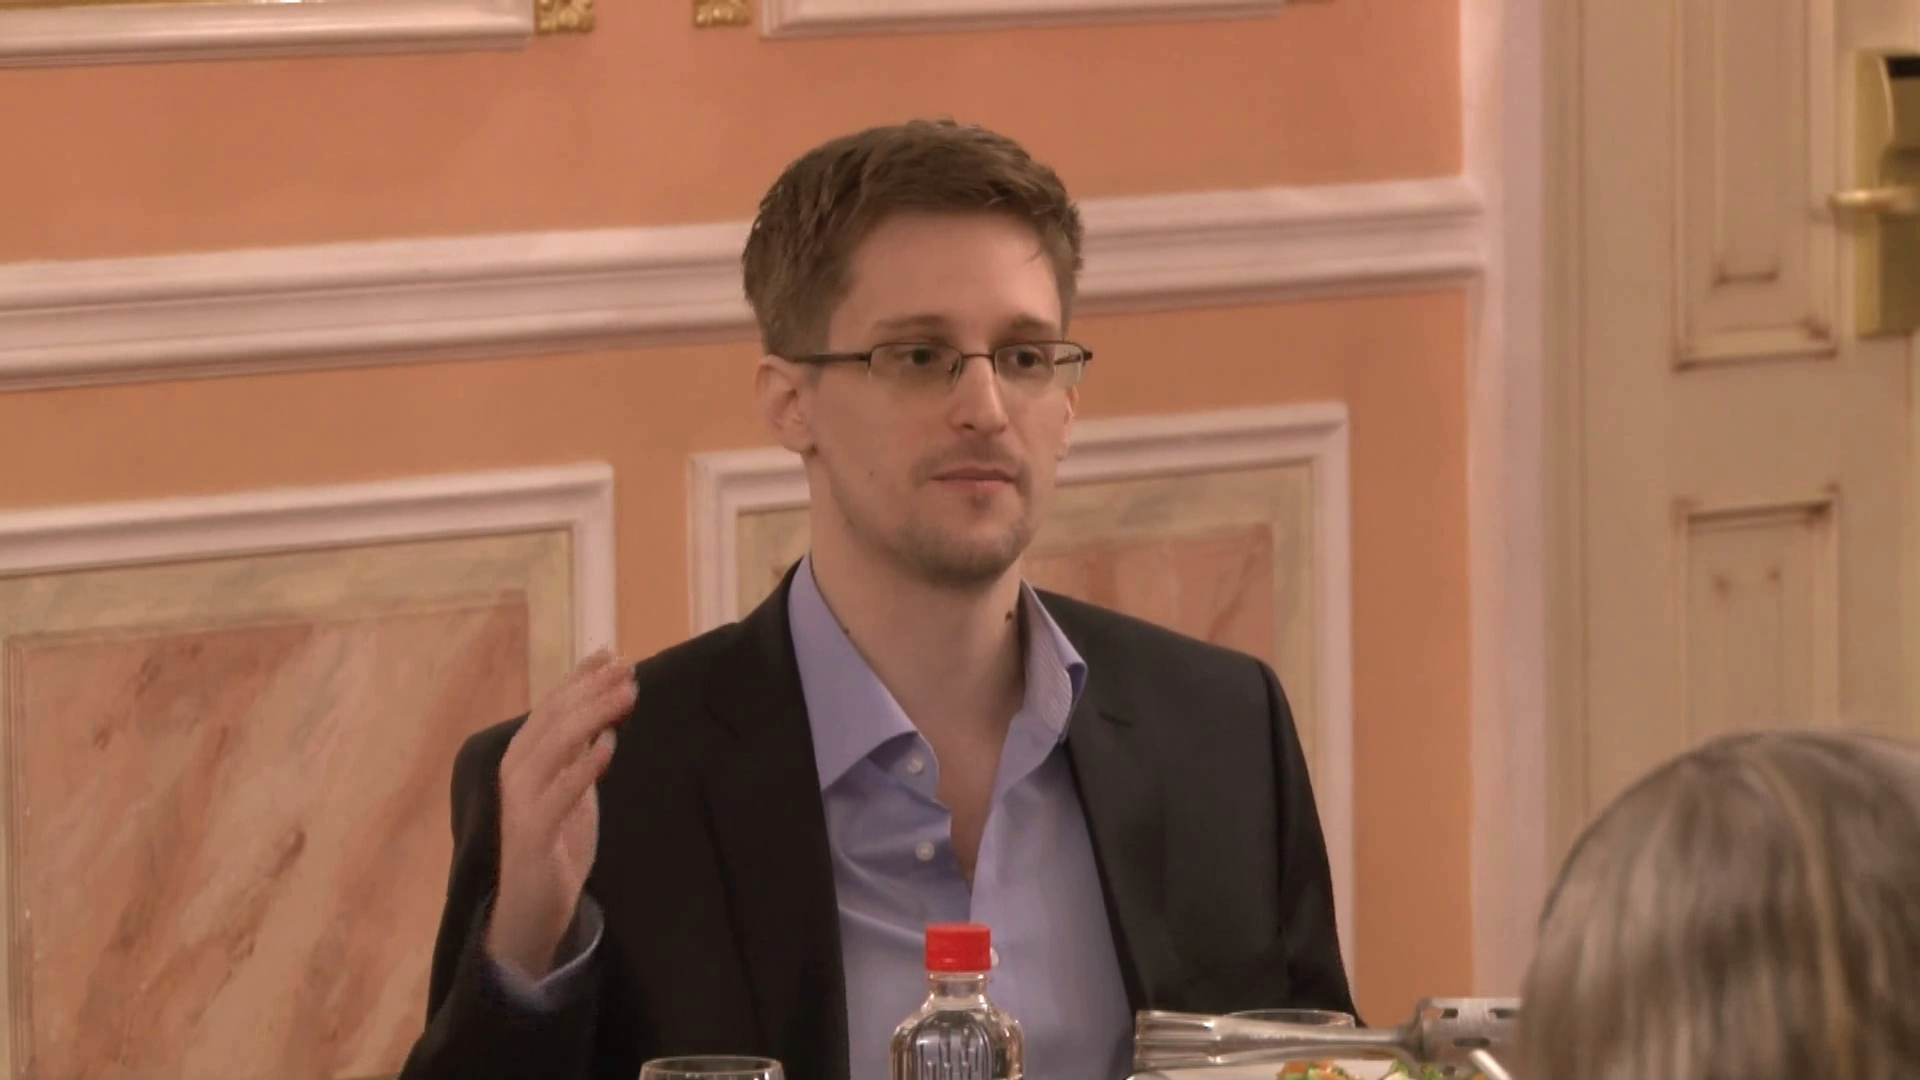 Edward Snowden Weighs In On The Biden Document Scandal